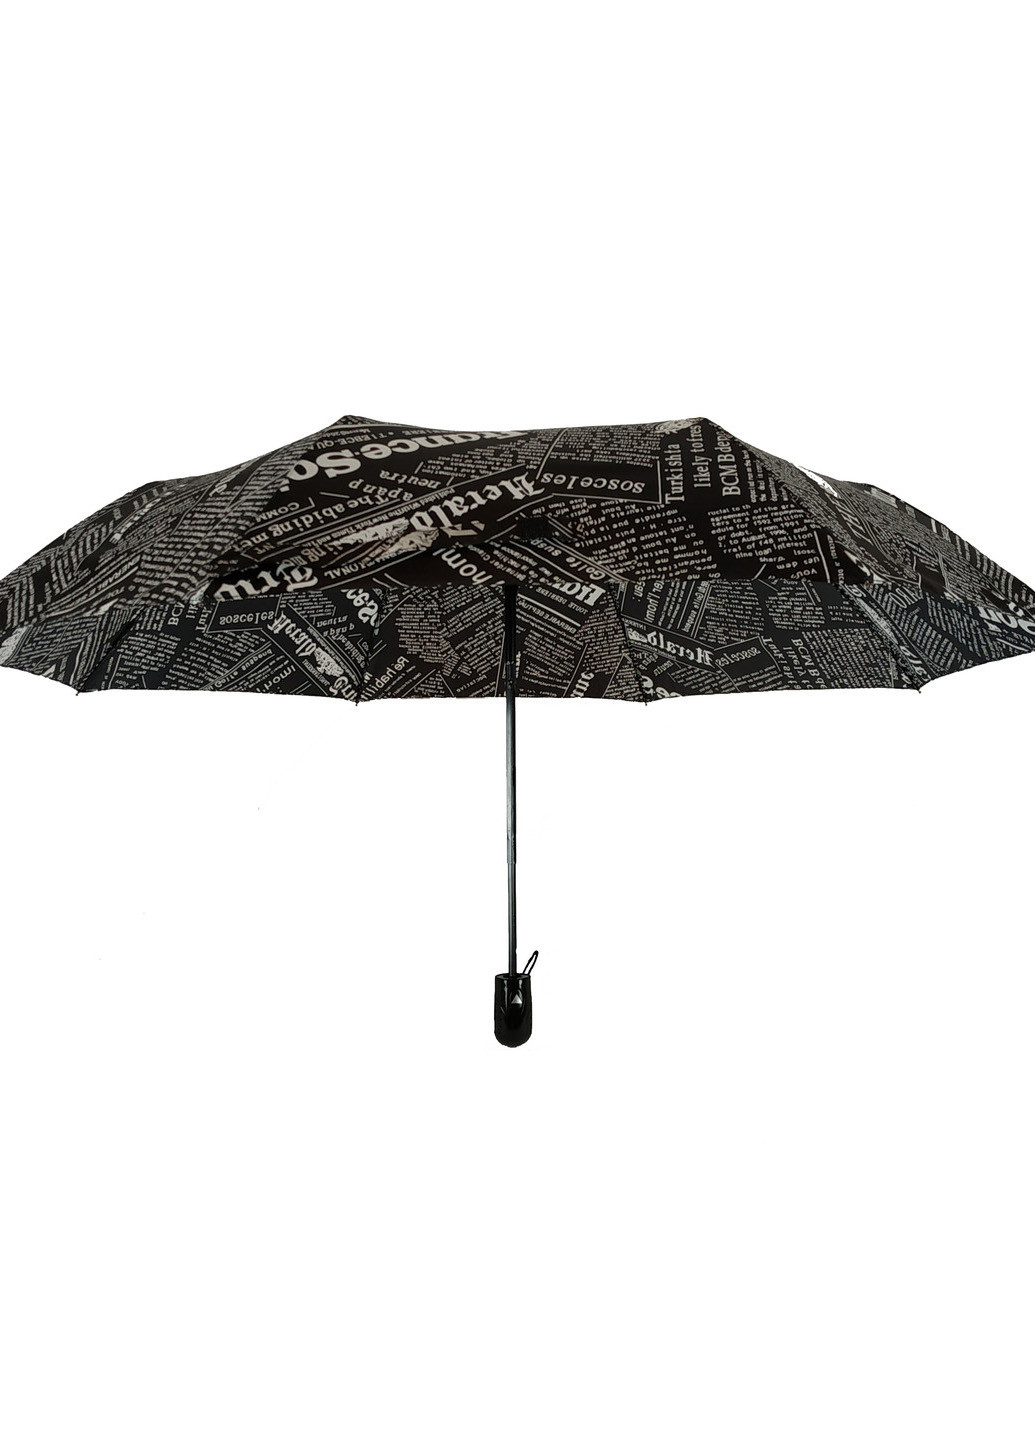 Женский зонт полуавтомат (2008) 97 см Max (189979124)